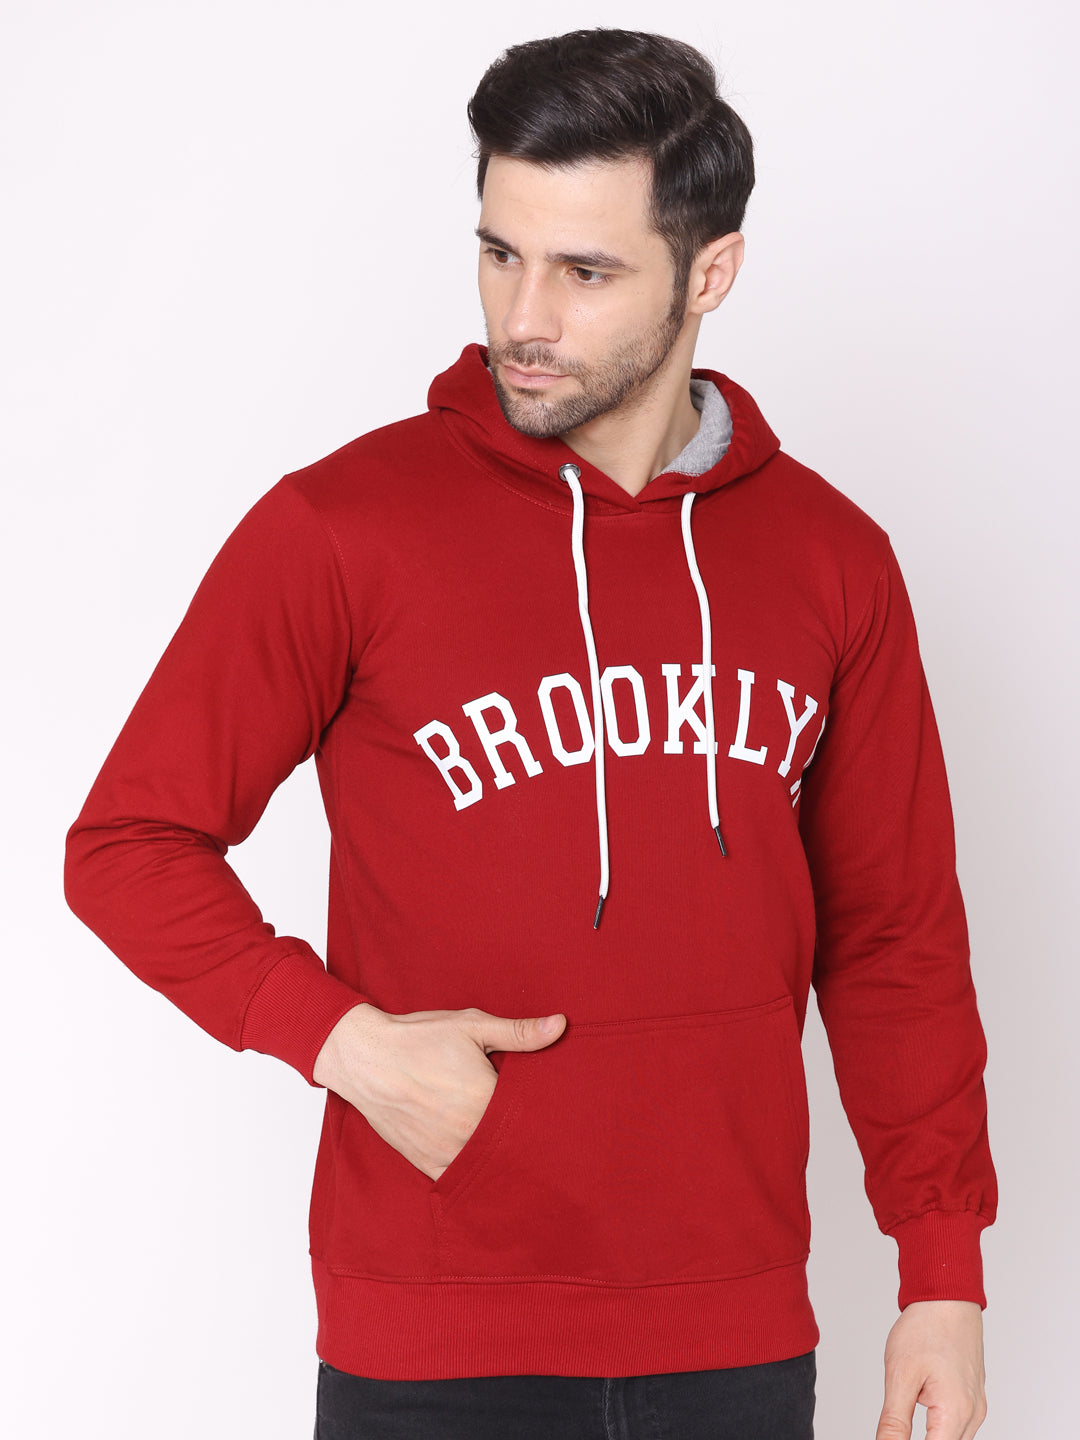 Men's Brooklyn Maroon Printed Hoodie